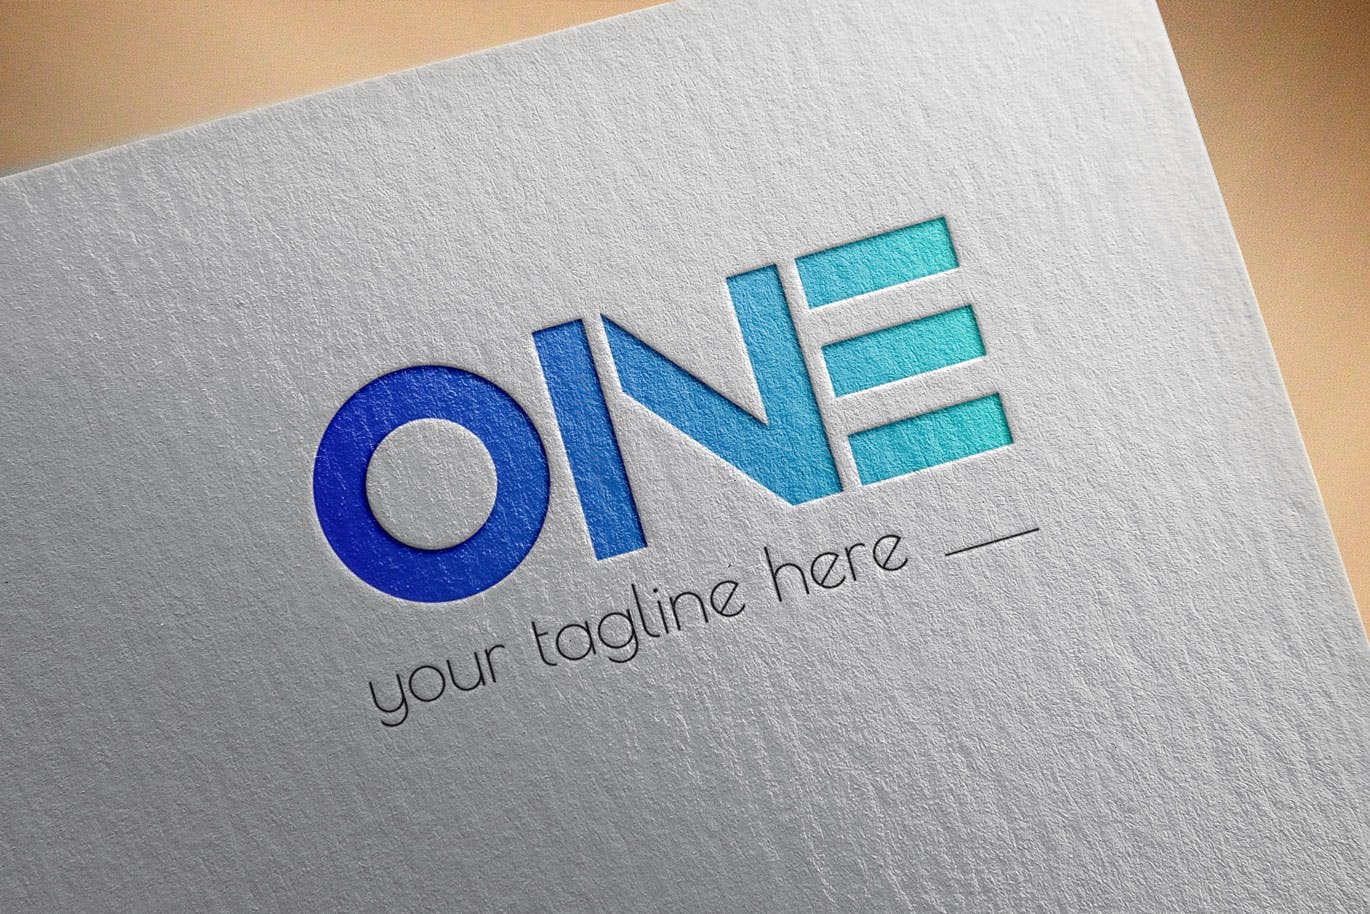 创意ONE文字Logo设计第一素材精选模板 One Modern Logo Template插图(2)